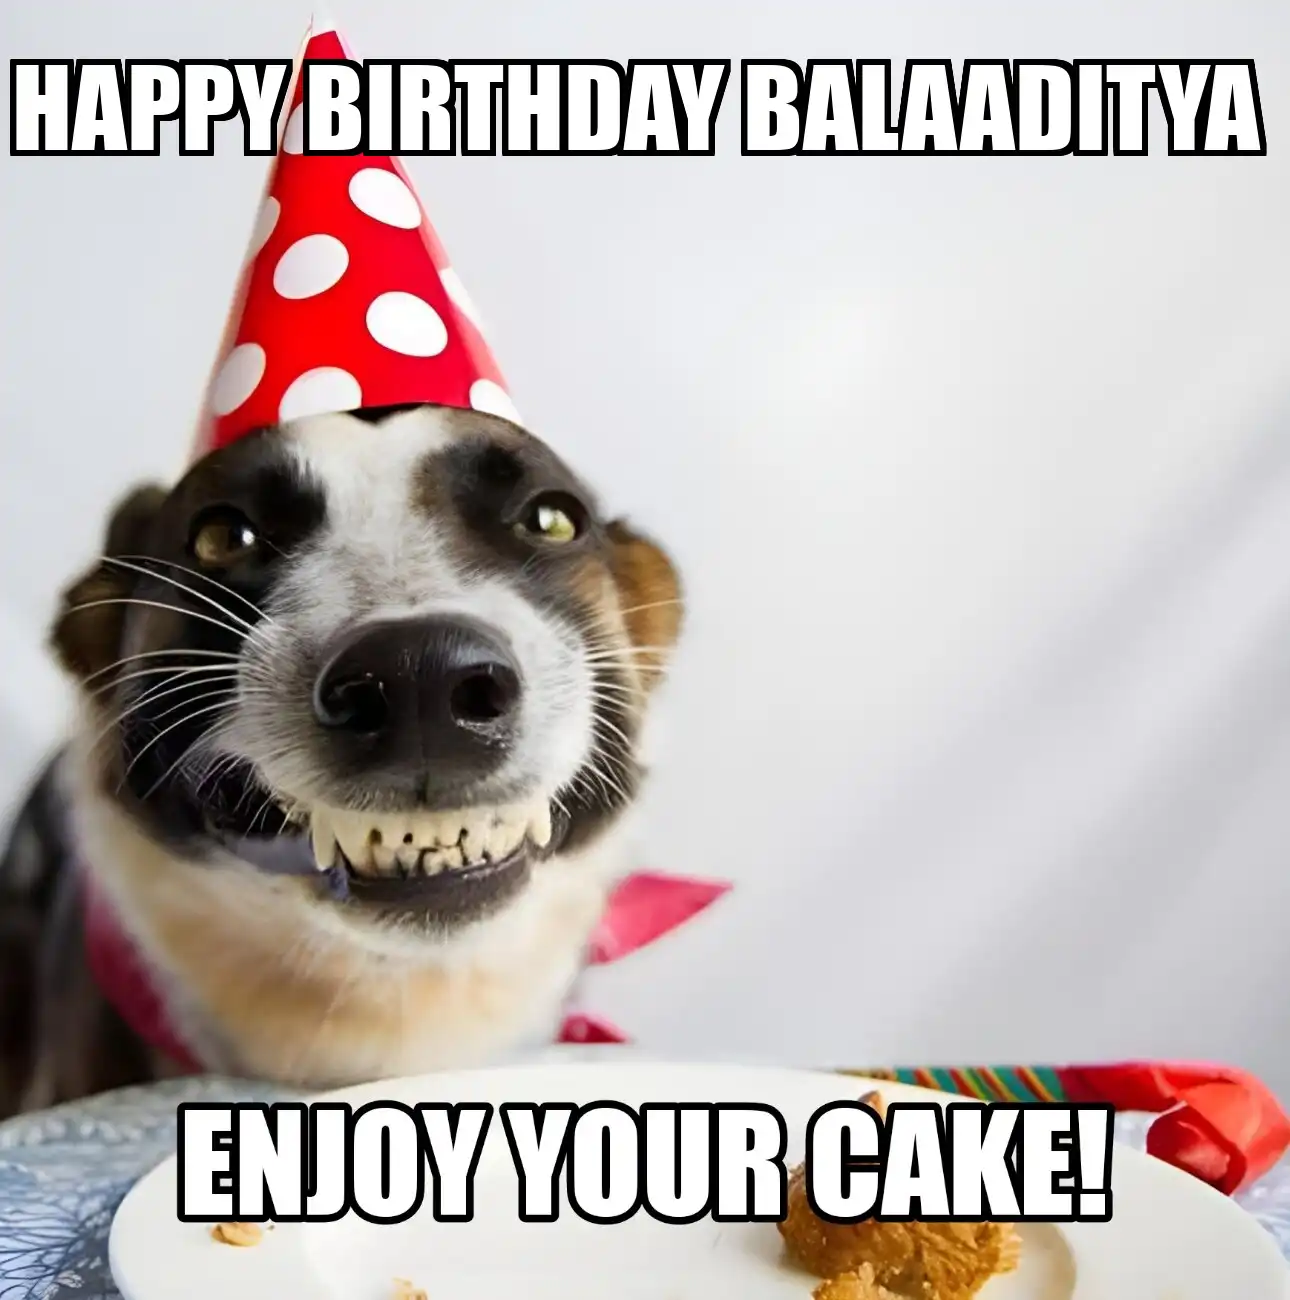 Happy Birthday Balaaditya Enjoy Your Cake Dog Meme